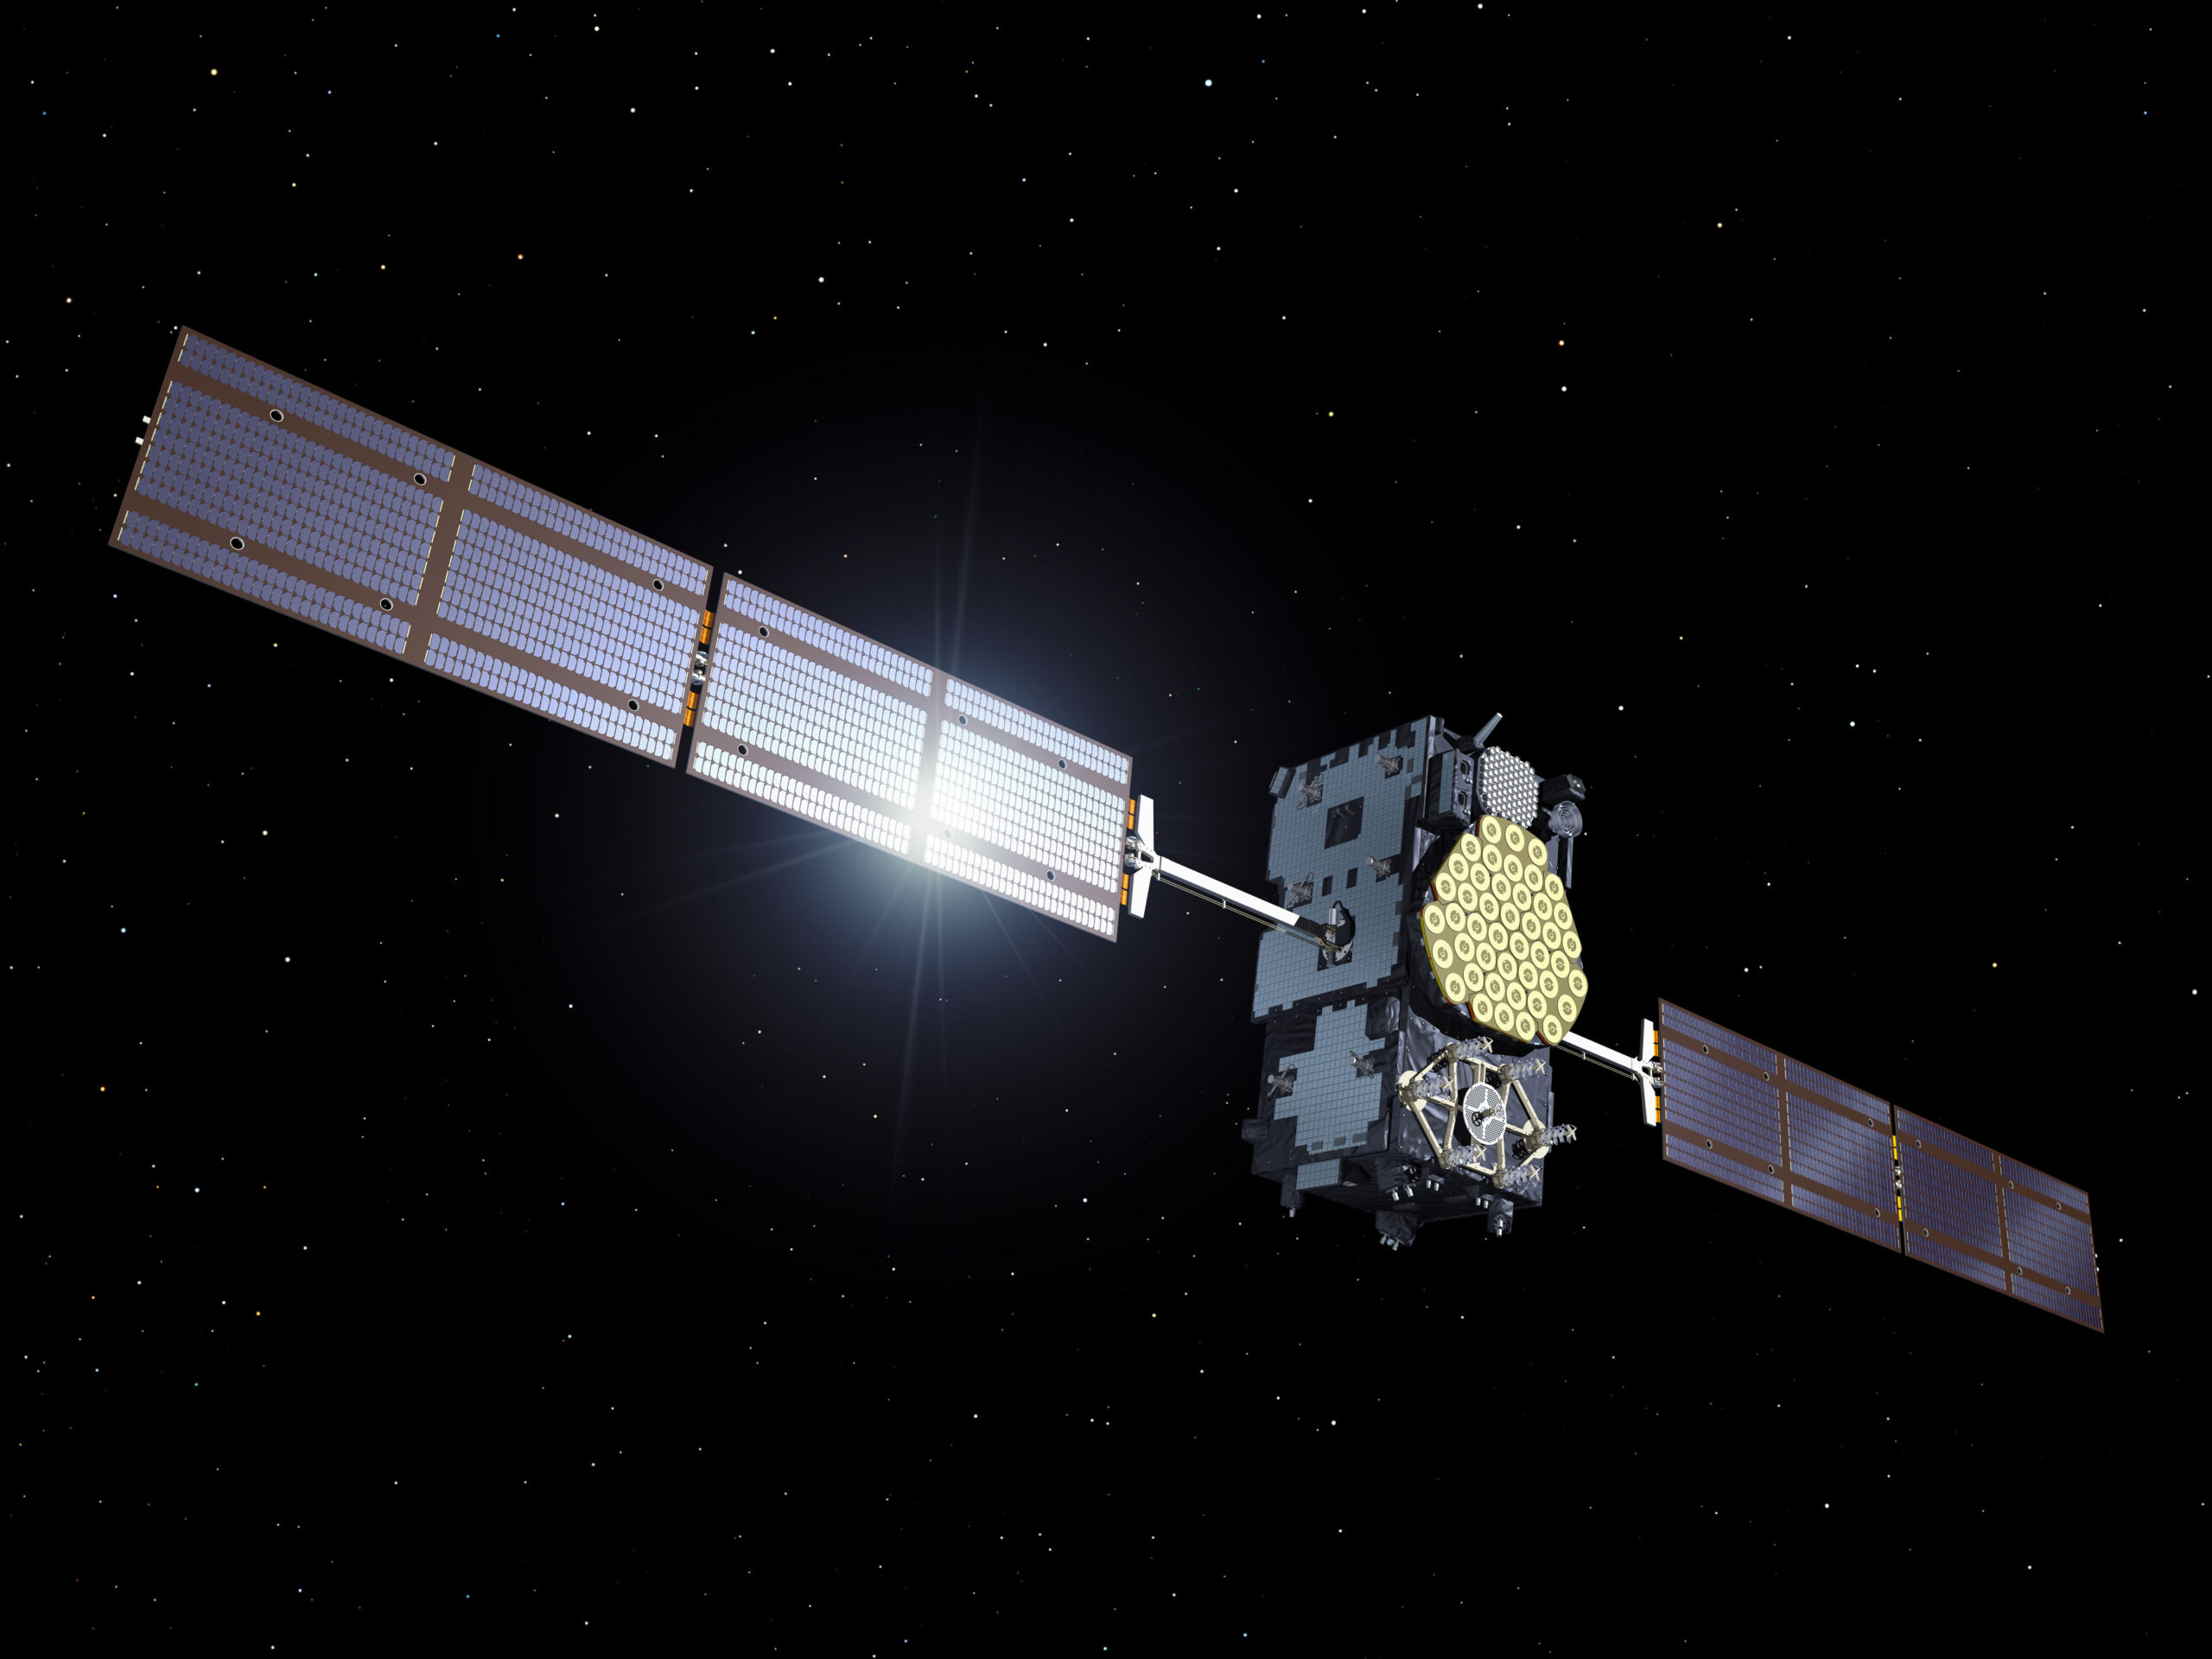 Problemi tecnici per Galileo, interruzione temporanea dei servizi